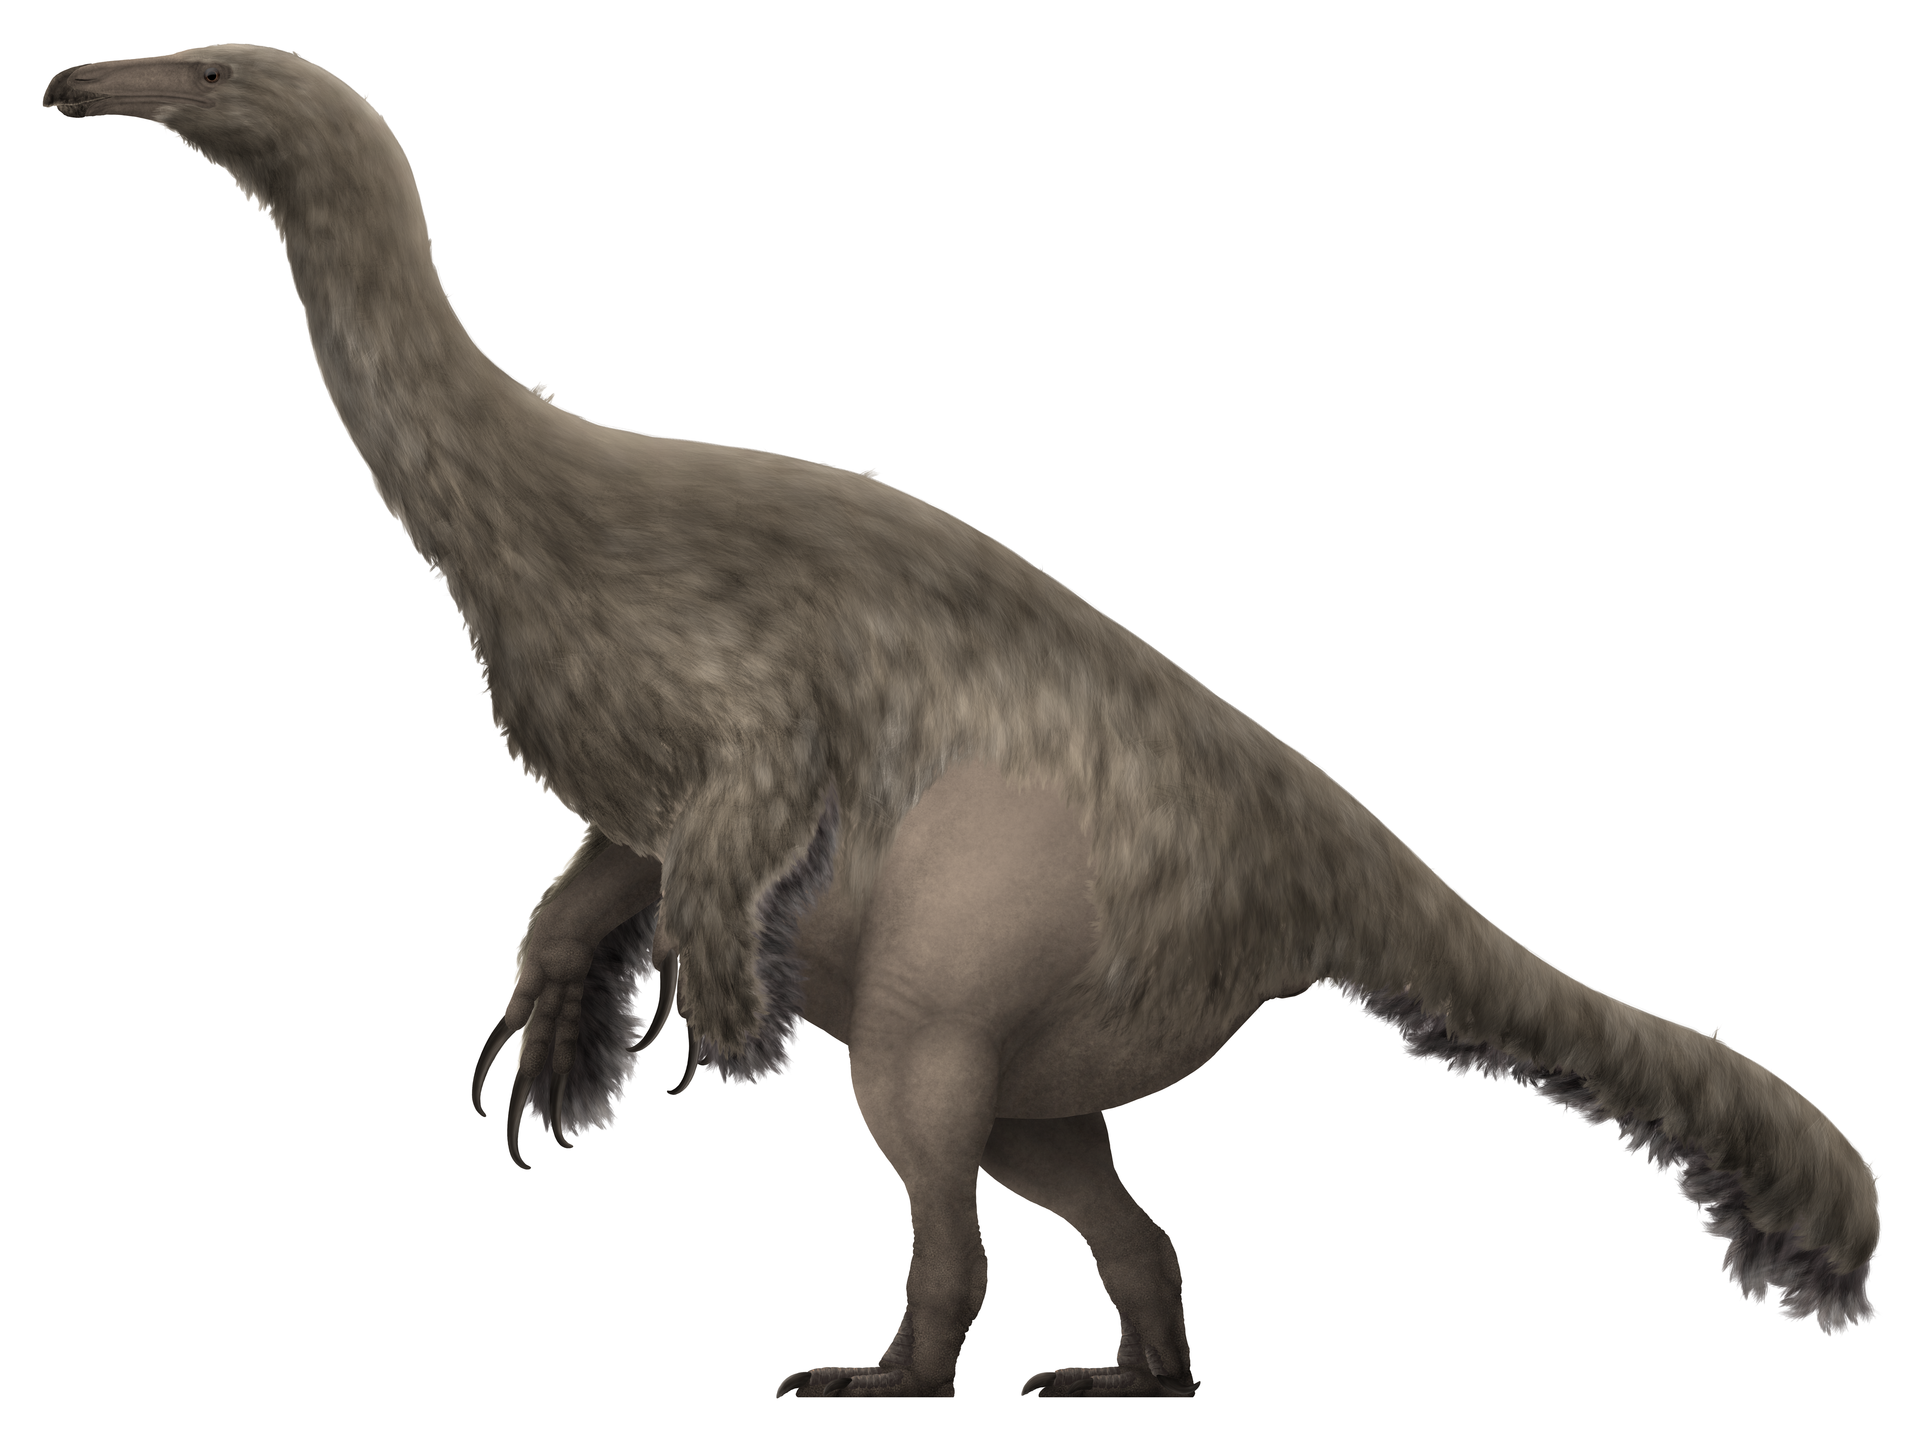 Dalším přírůstkem do skupiny zatím jedenácti známých japonských neptačích dinosaurů je také Paralitherizinosaurus japonicus. Tento relativně malý příbuzný rodů Therizinosaurus a Suzhousaurus žil v období pozdní křídy (věk kampán) a jeho fosilní pozůs